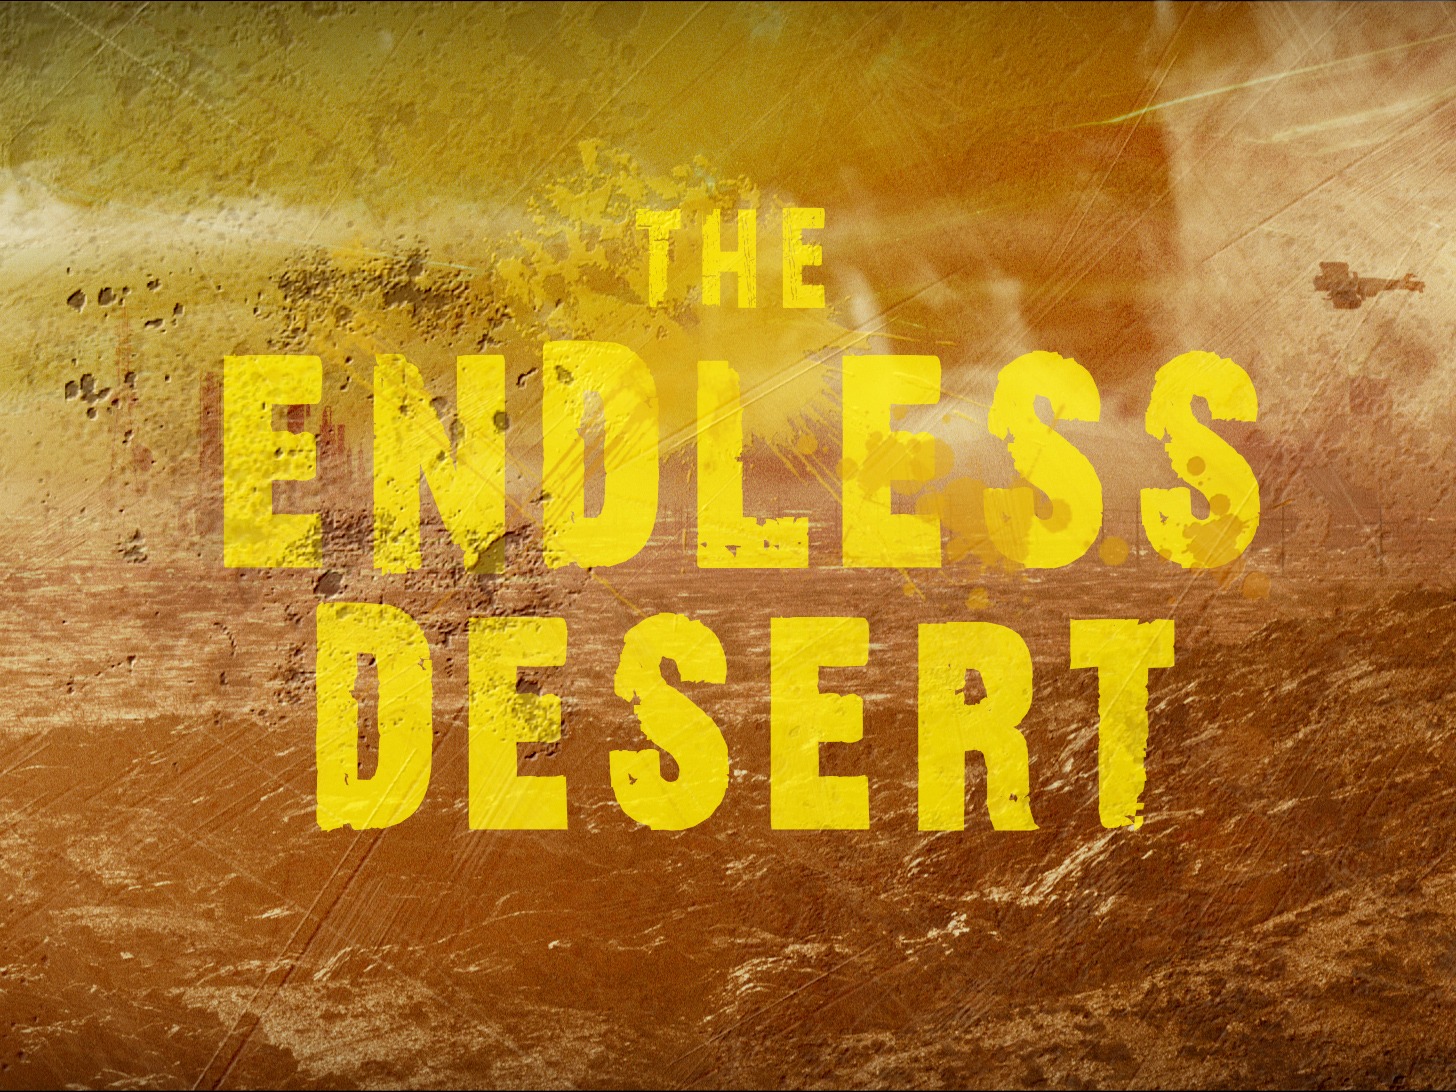 The Endless Desert 无尽荒漠-Style Frame